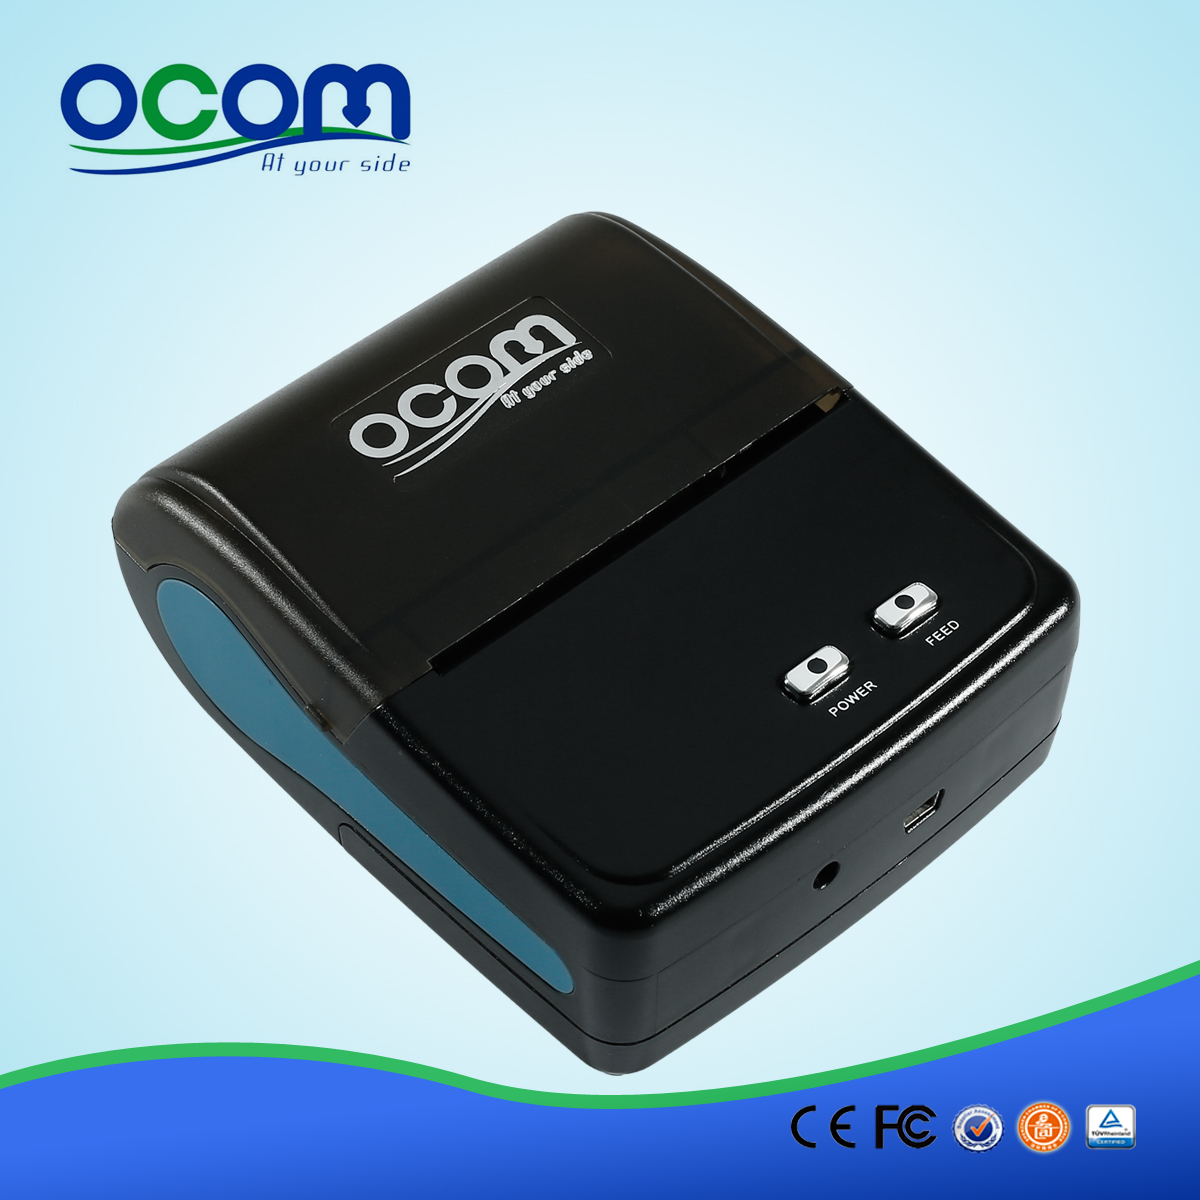 OCPP-M04D stampante portatile stampante a matrice di punti mini bluetooth